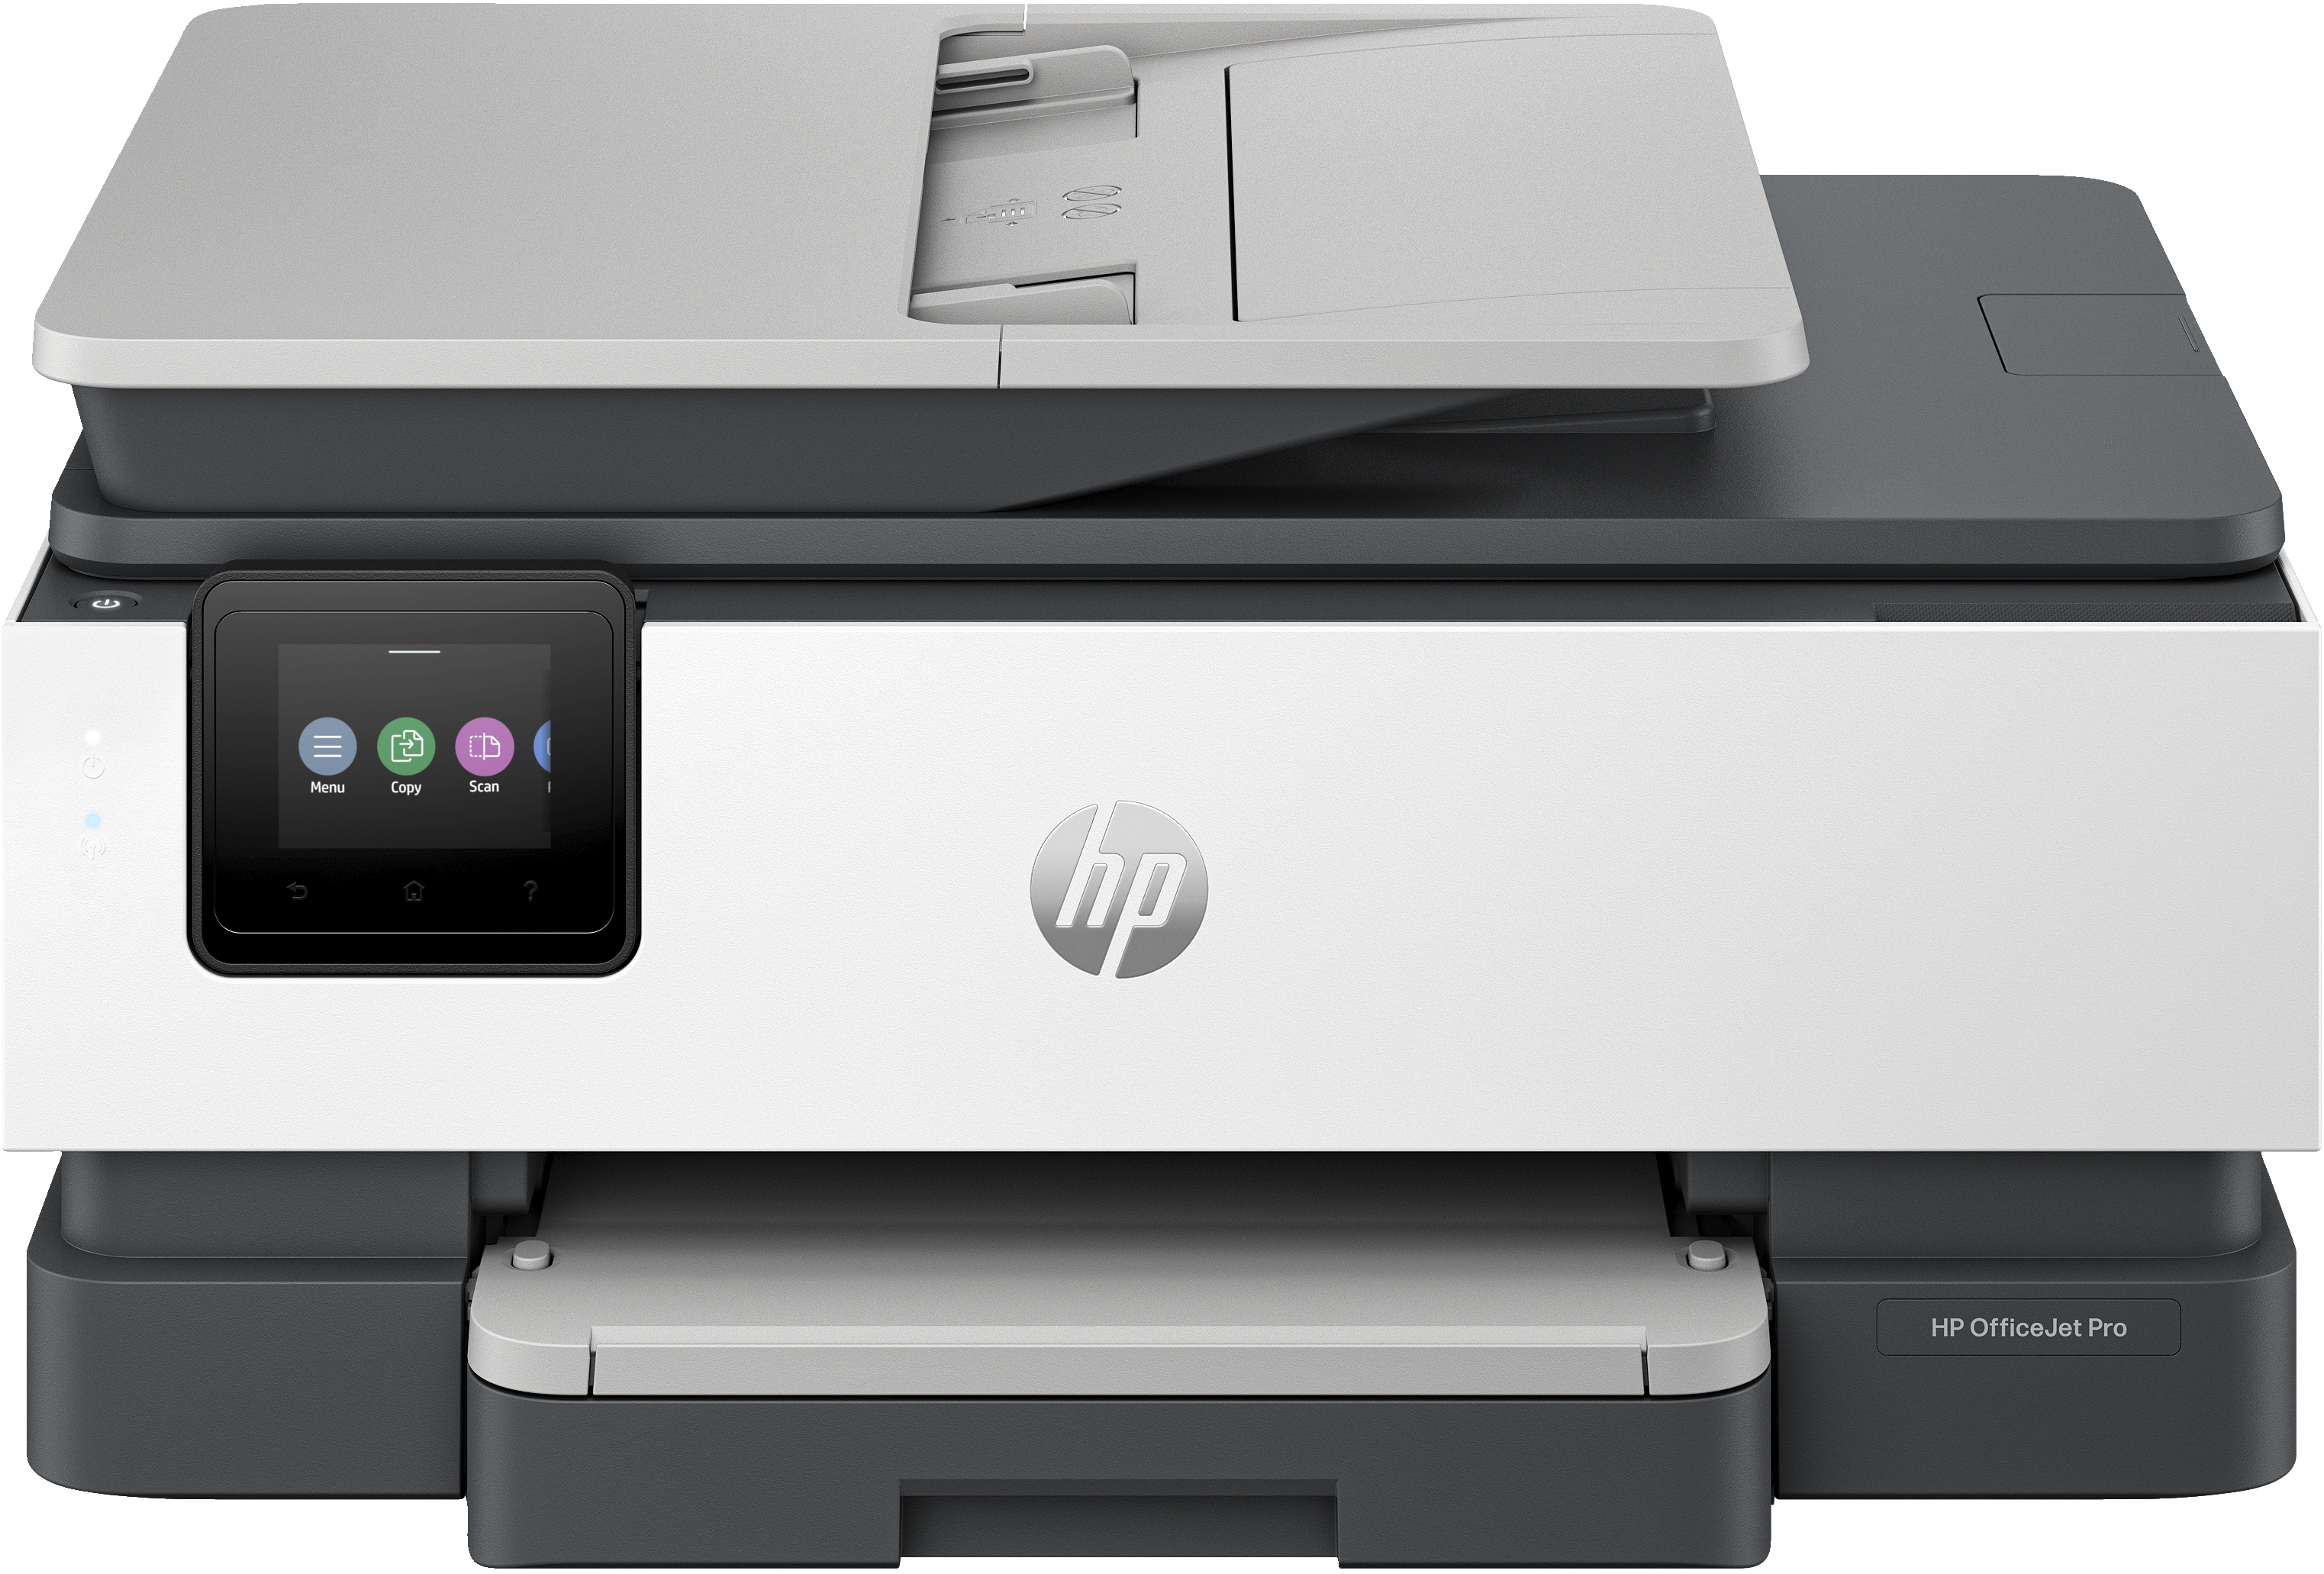 Image of HP OfficeJet Pro Stampante multifunzione HP 8135e, Colore, Stampante per Casa, Stampa, copia, scansione, fax, idonea a HP Instant Ink; alimentatore automatico di documenti; touchscreen; Modalità silenziosa; Stampa tramite VPN con HP+